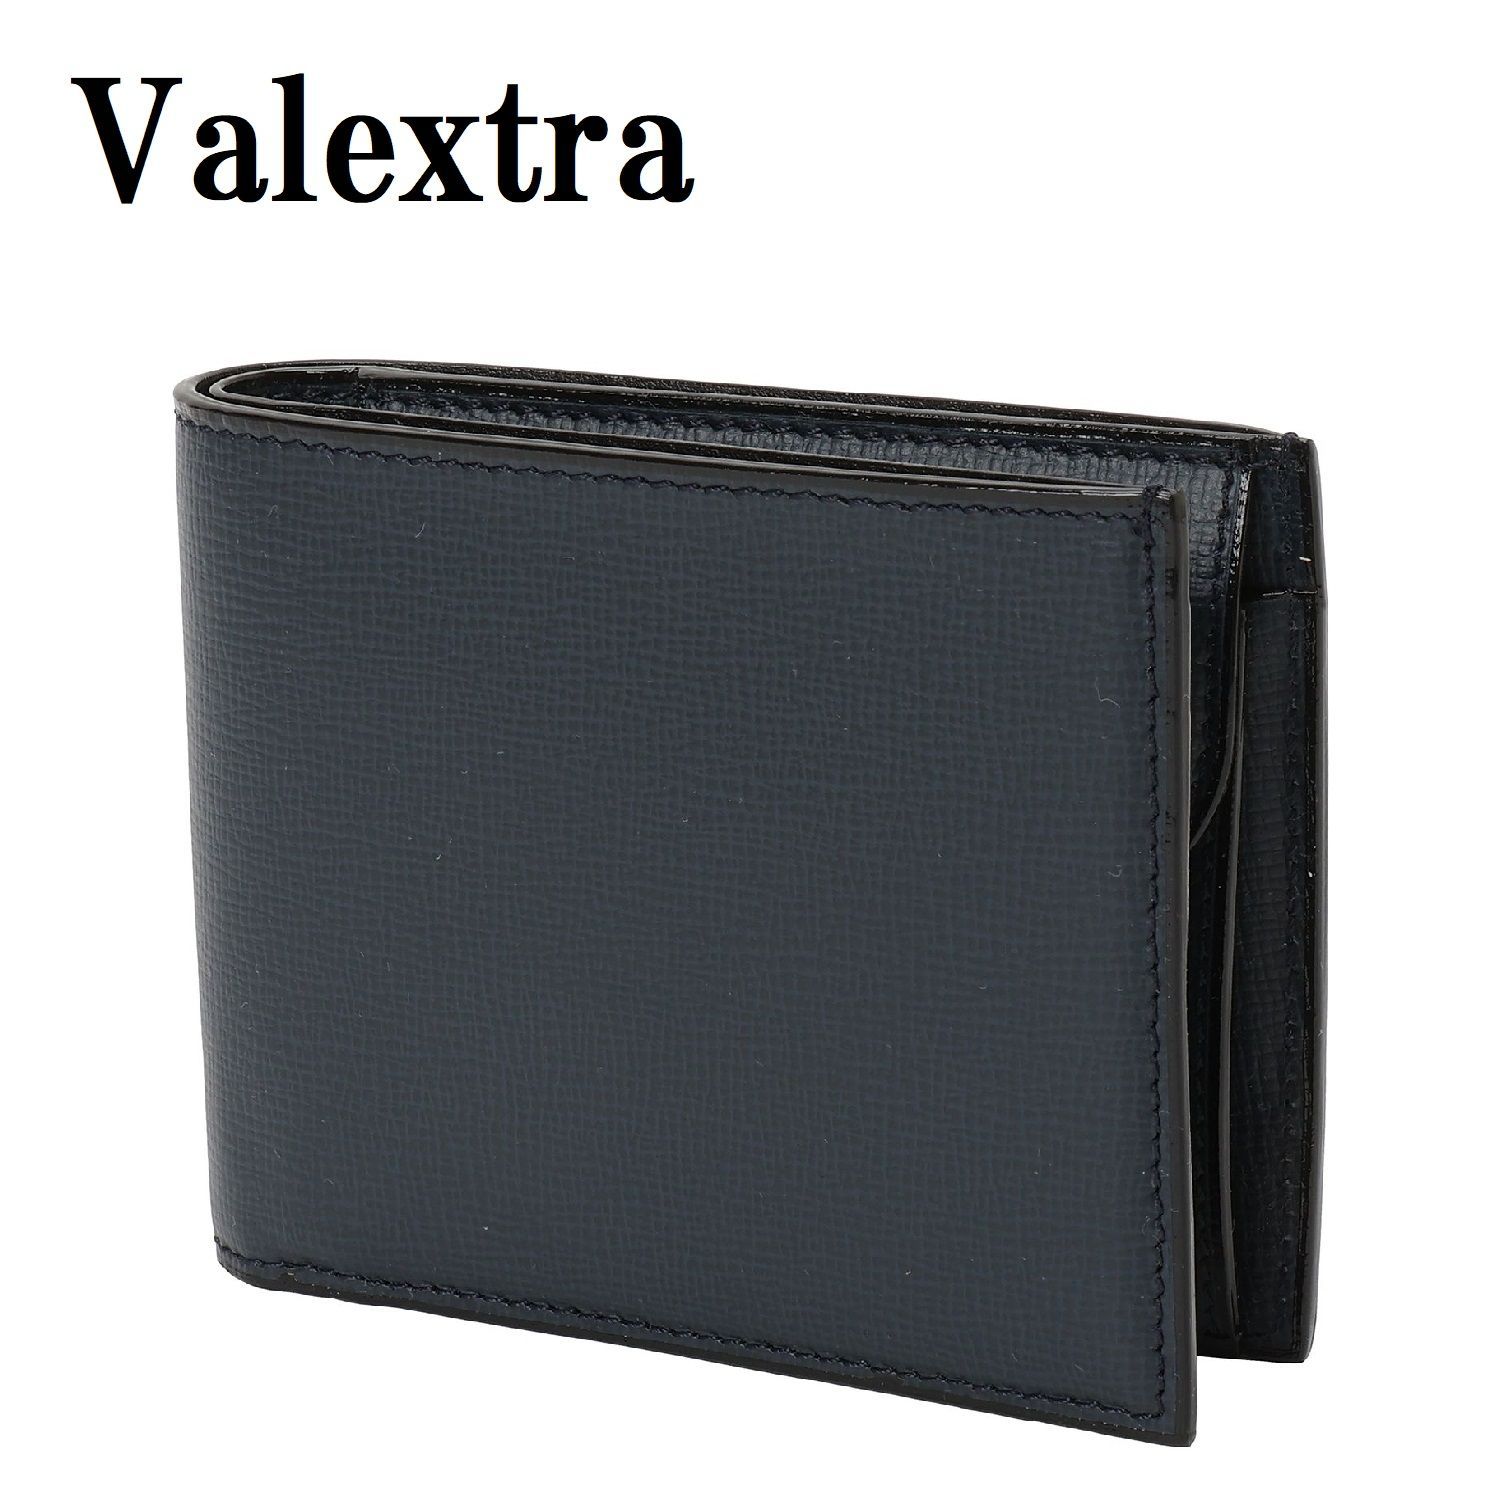 10小銭入れヴァレクストラ Valextra 財布 カードケース 二つ折り レザー 黒